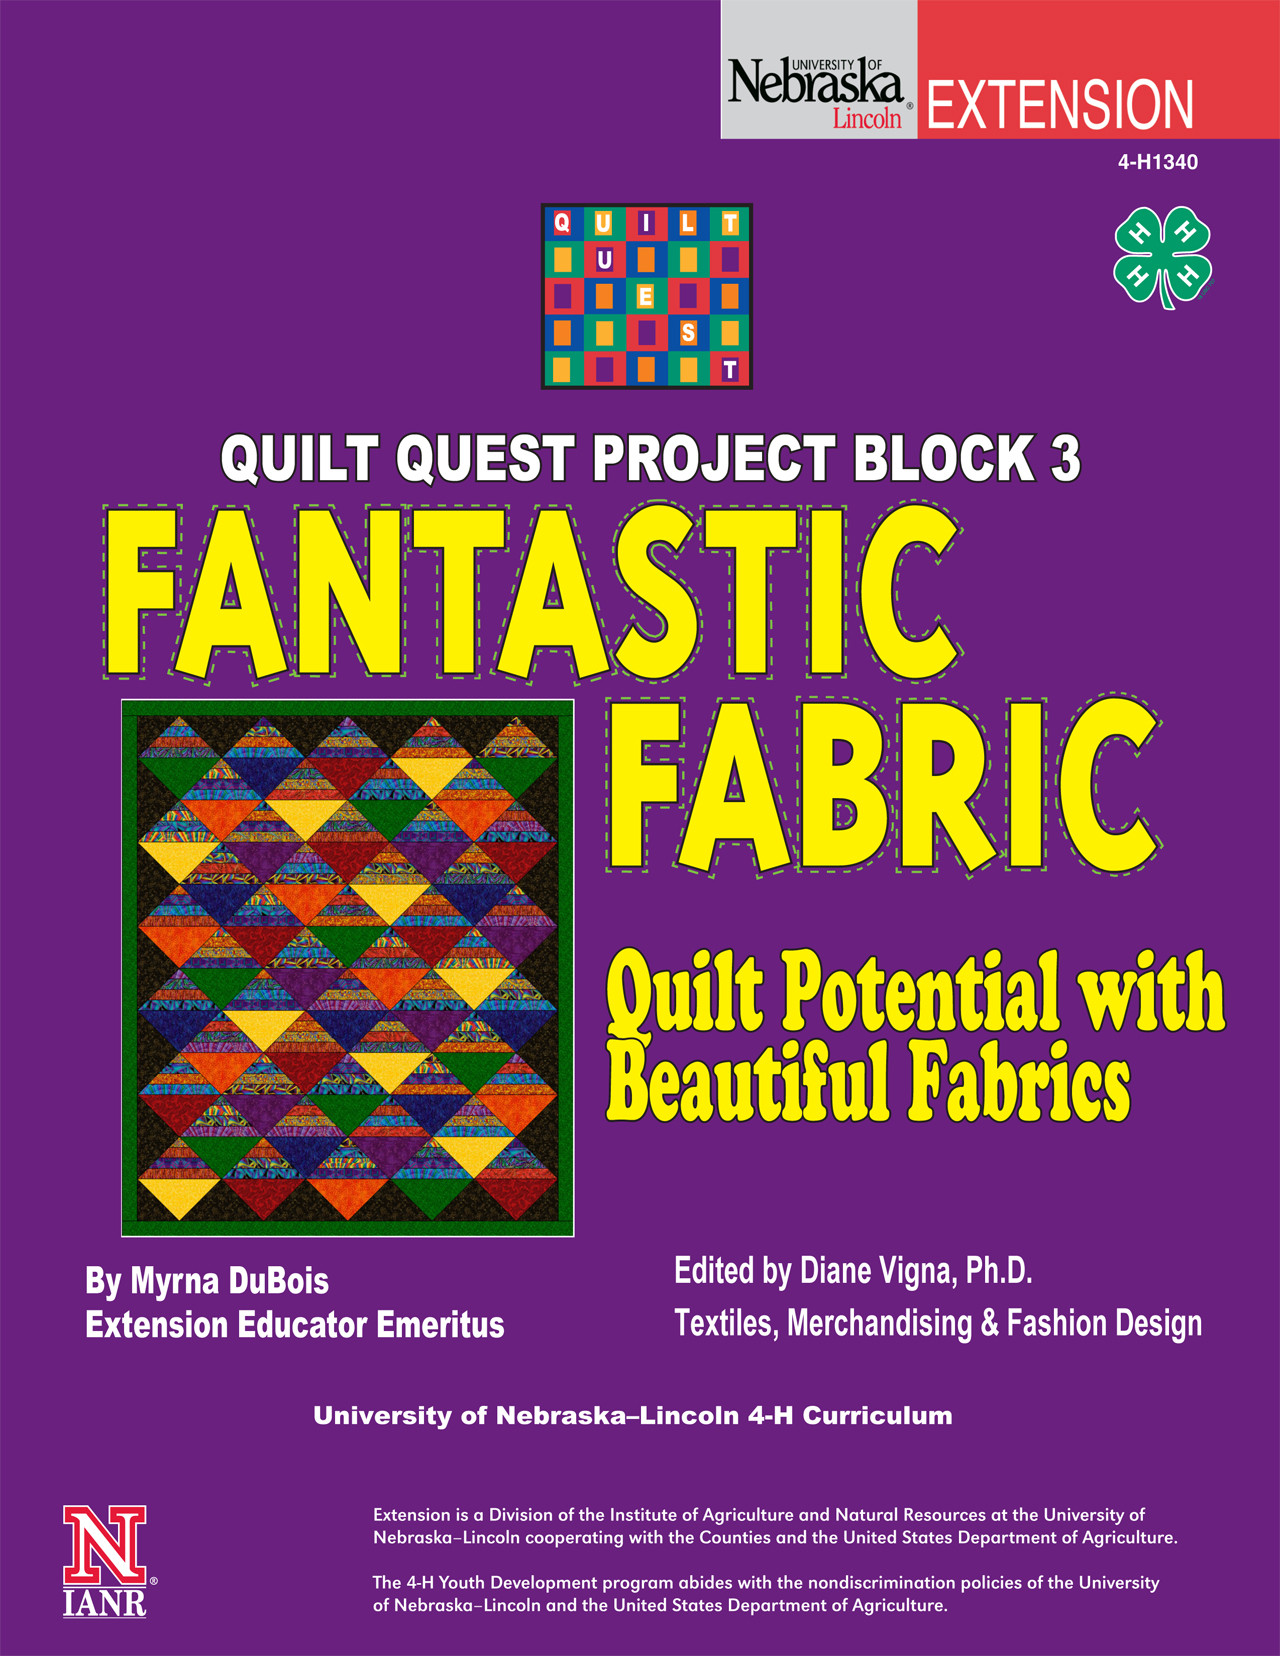 Quilt Quest Project Block 3: Fantastic Fabrics